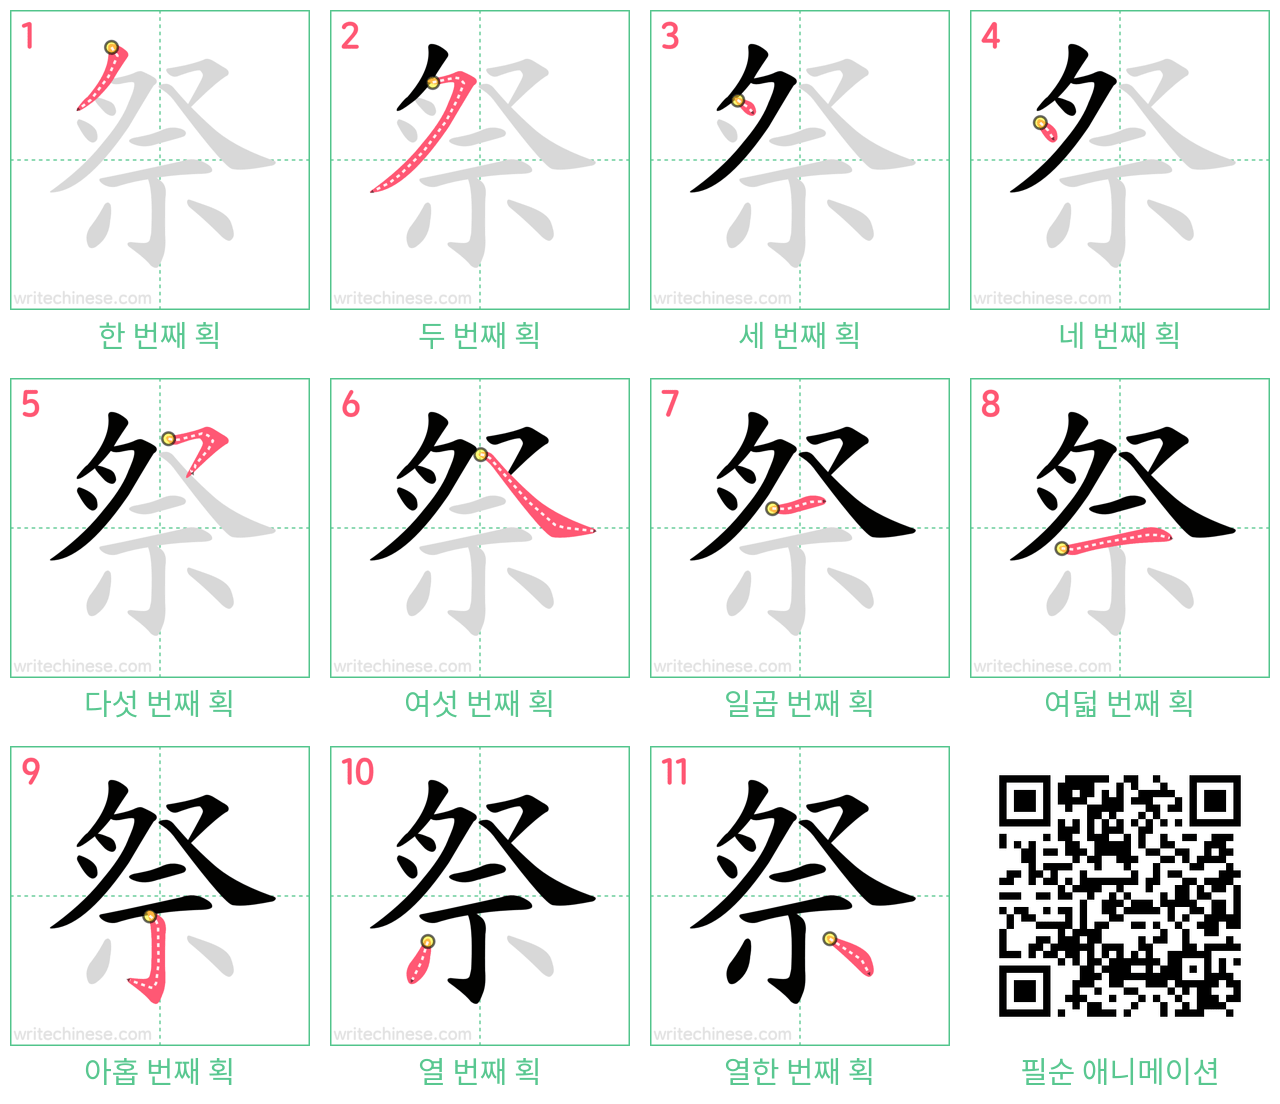 祭 step-by-step stroke order diagrams